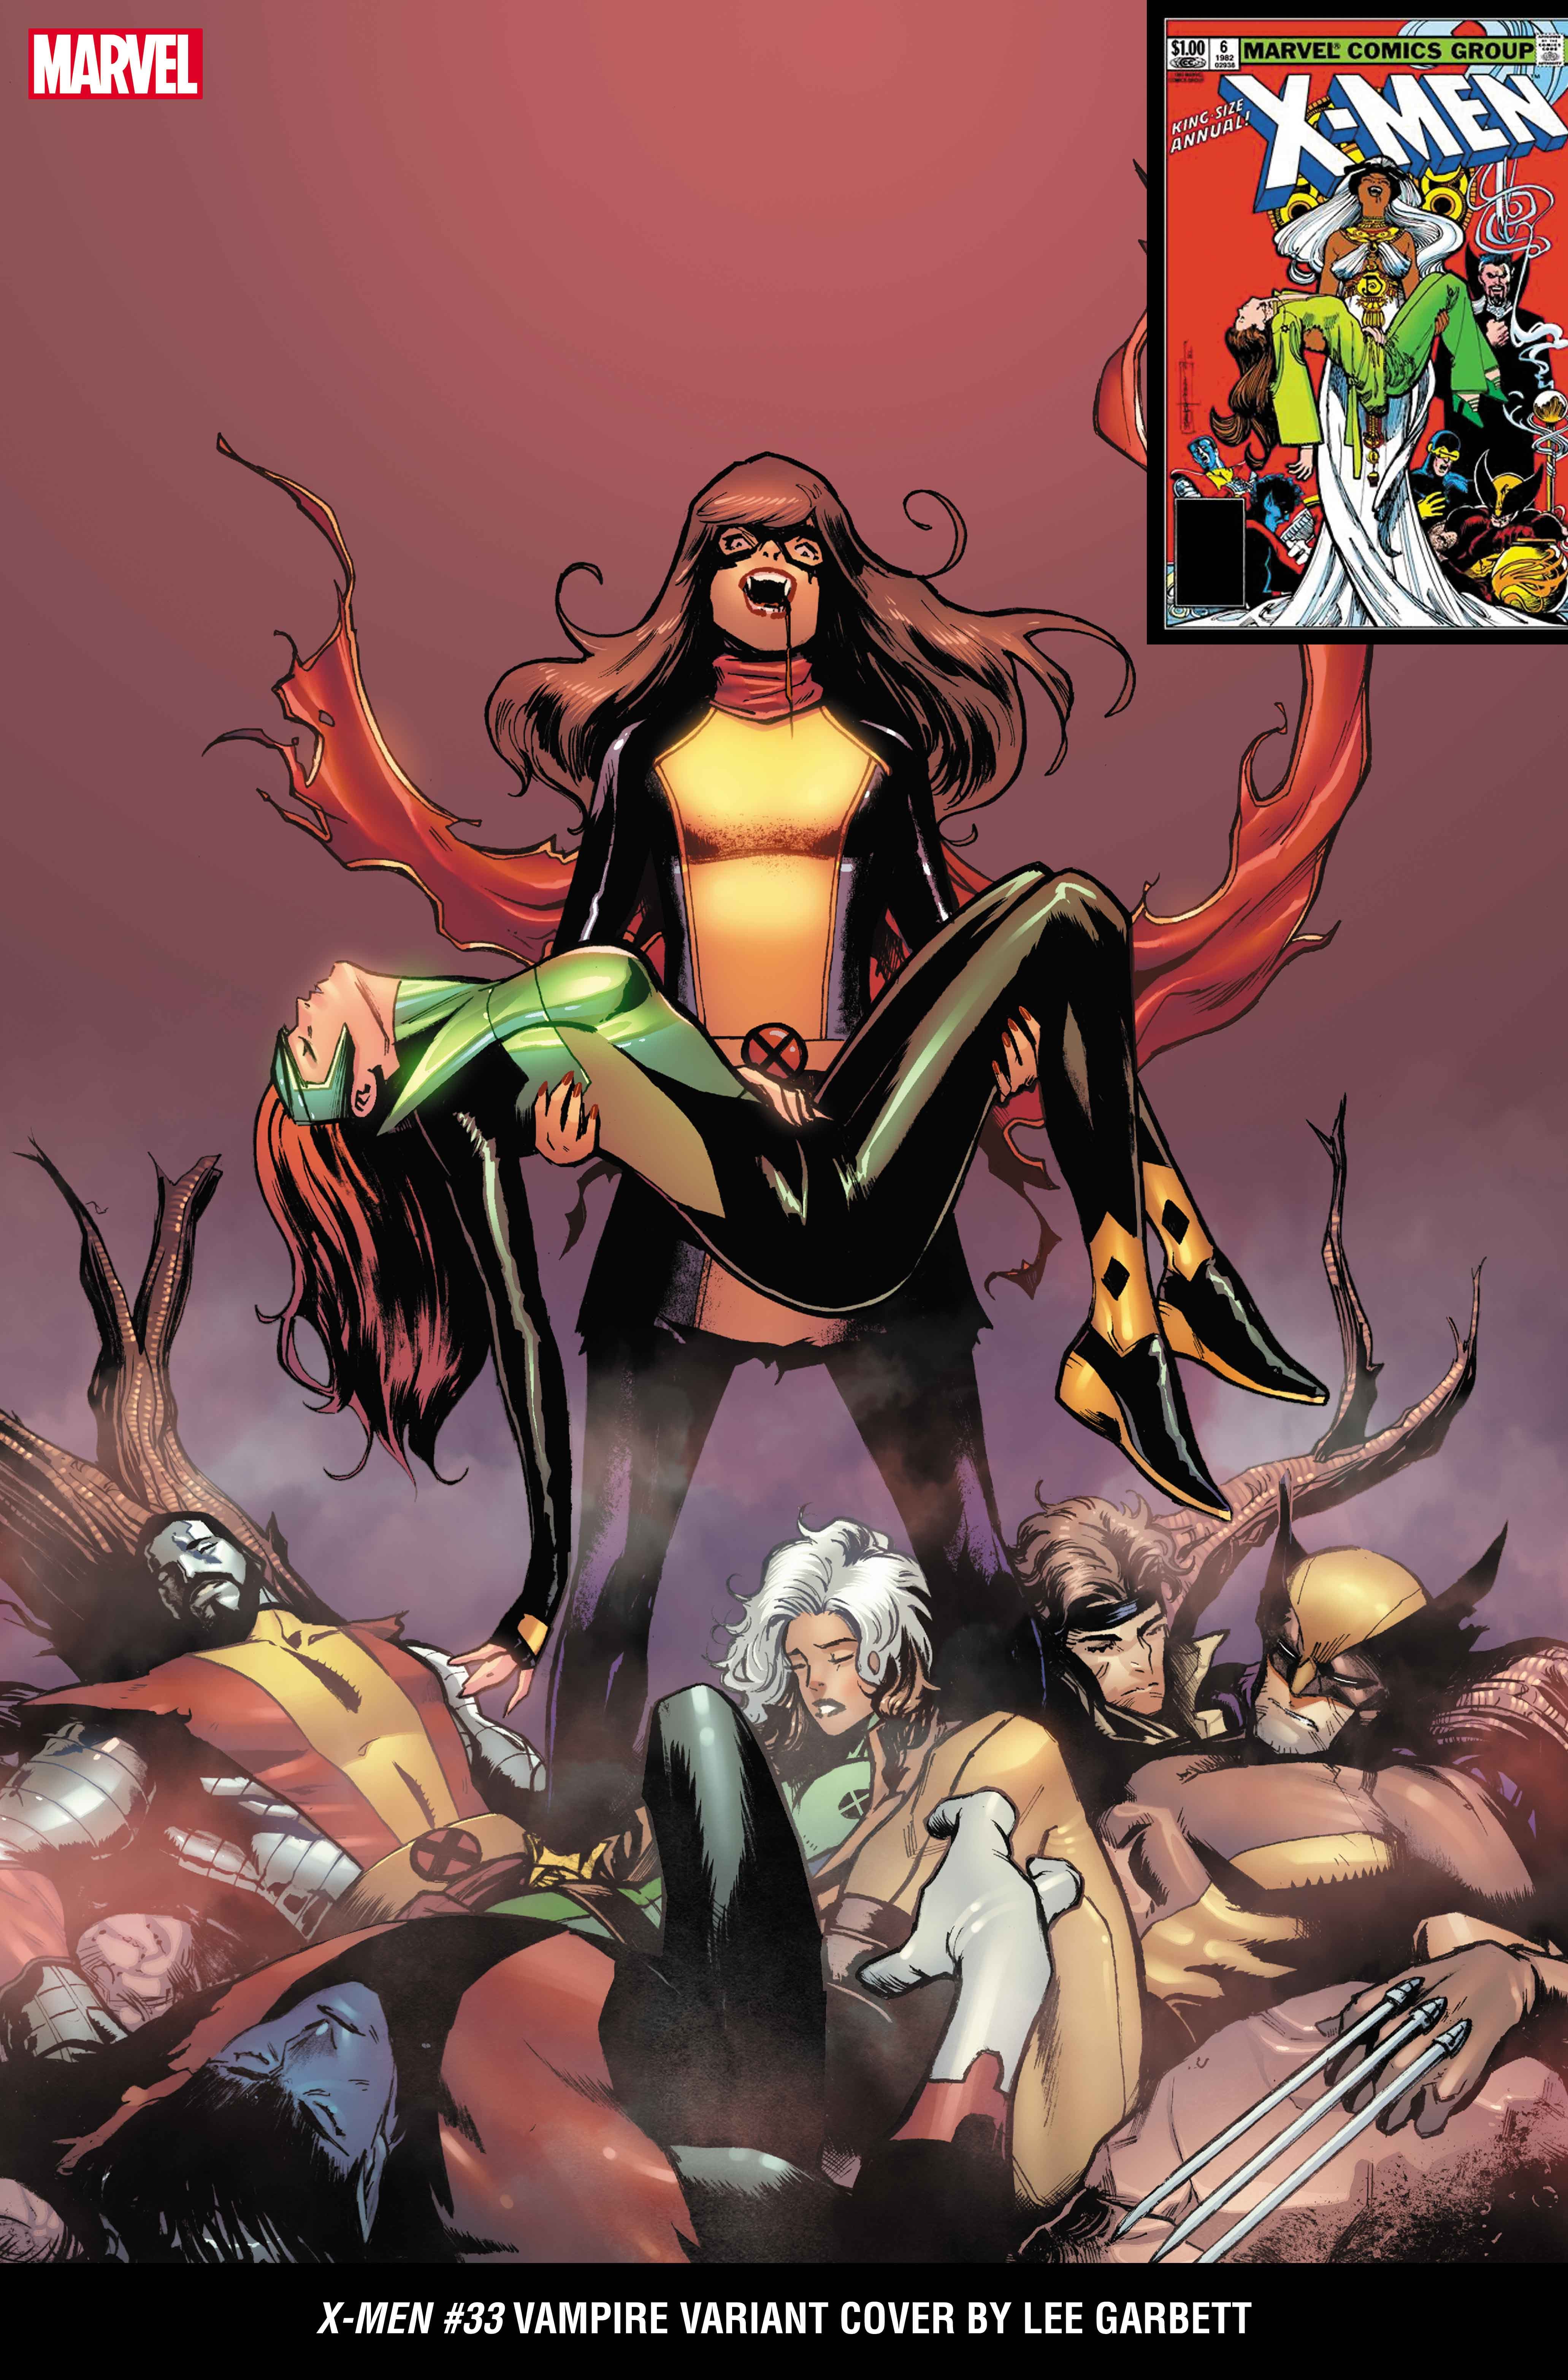 Mutantes viram vampiros em capas variantes da nova evento Marvel 